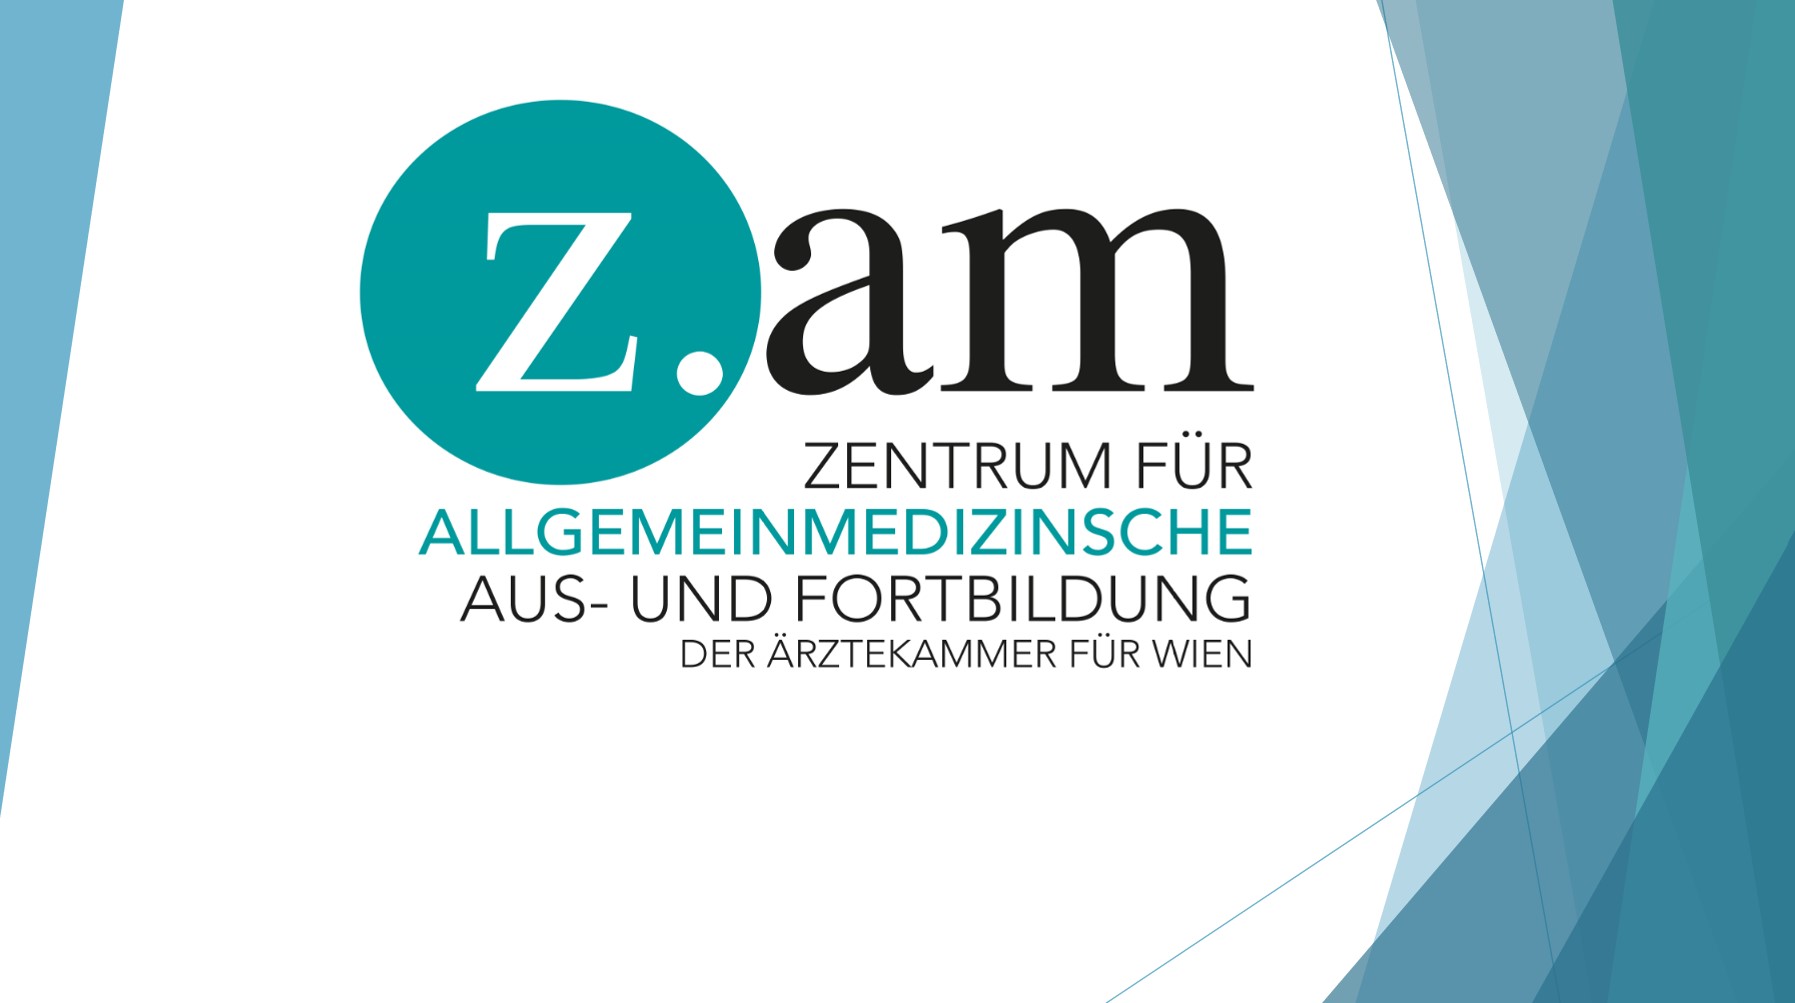 ZAM - Zentrum für Allgemeinmedizinische Aus- und Fortbildung